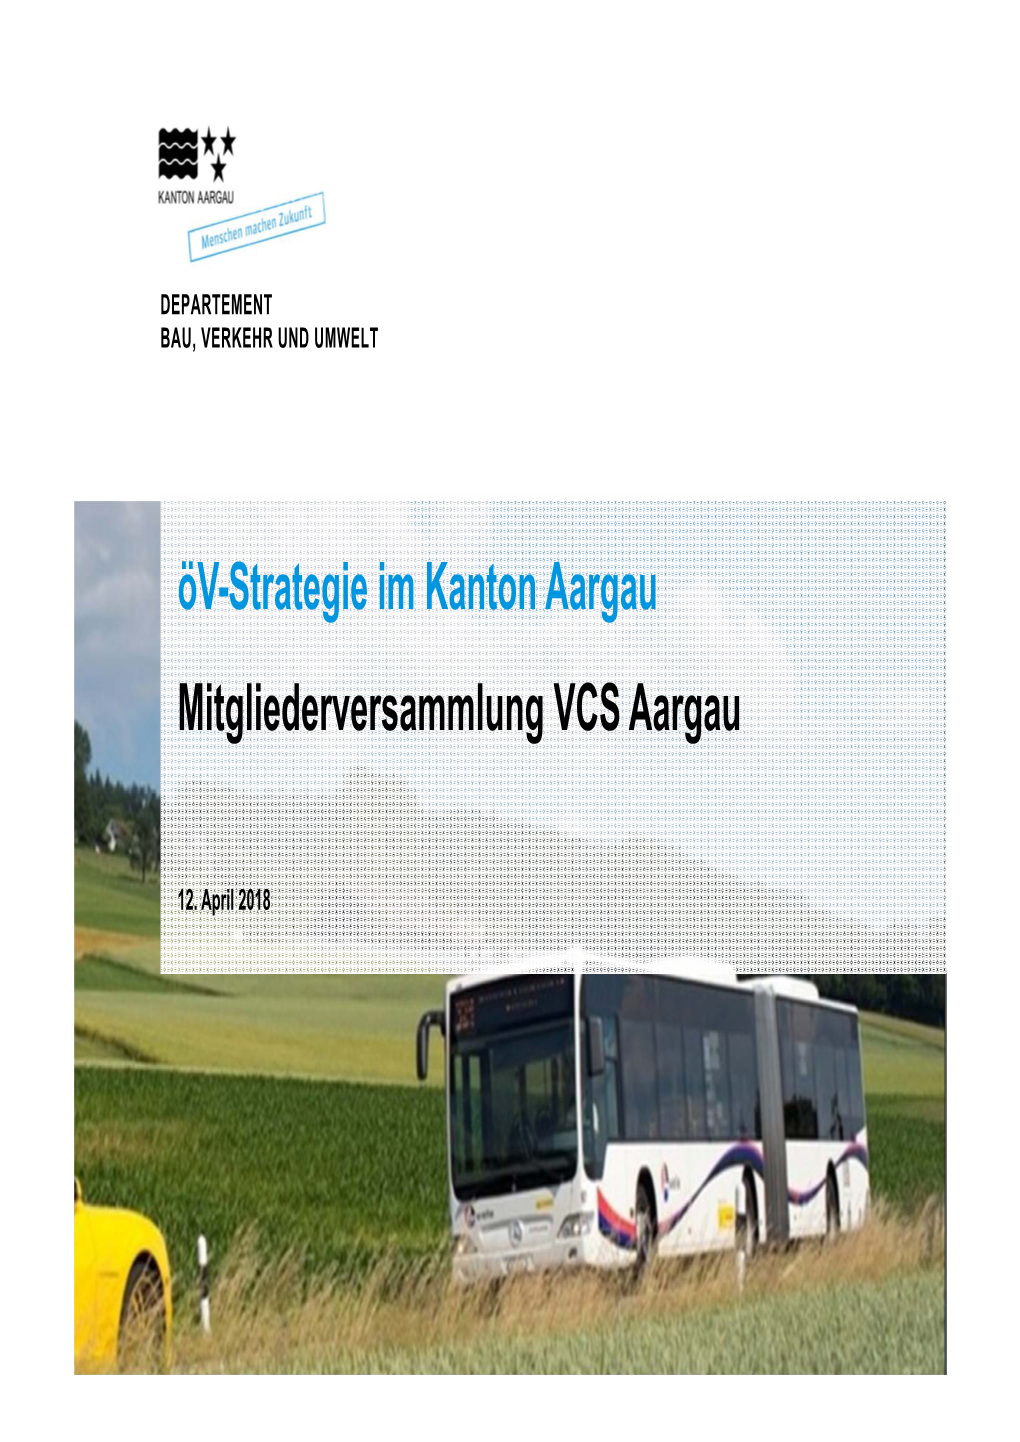 Mitgliederversammlung VCS Aargau Öv-Strategie Im Kanton Aargau